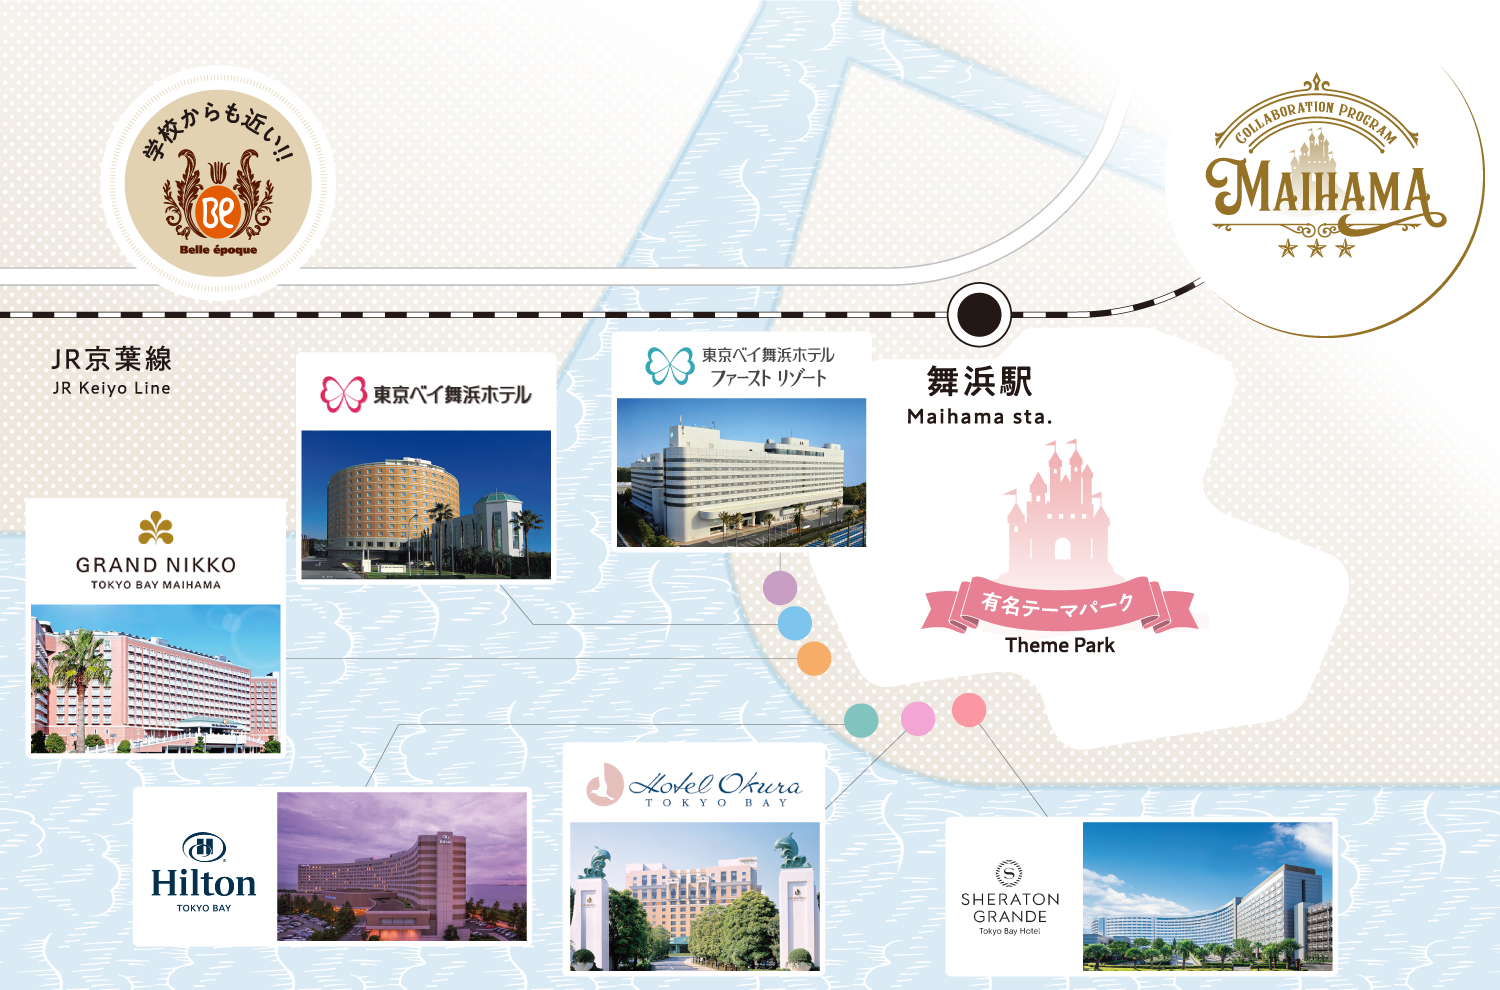 舞浜リゾートエリアのマップ